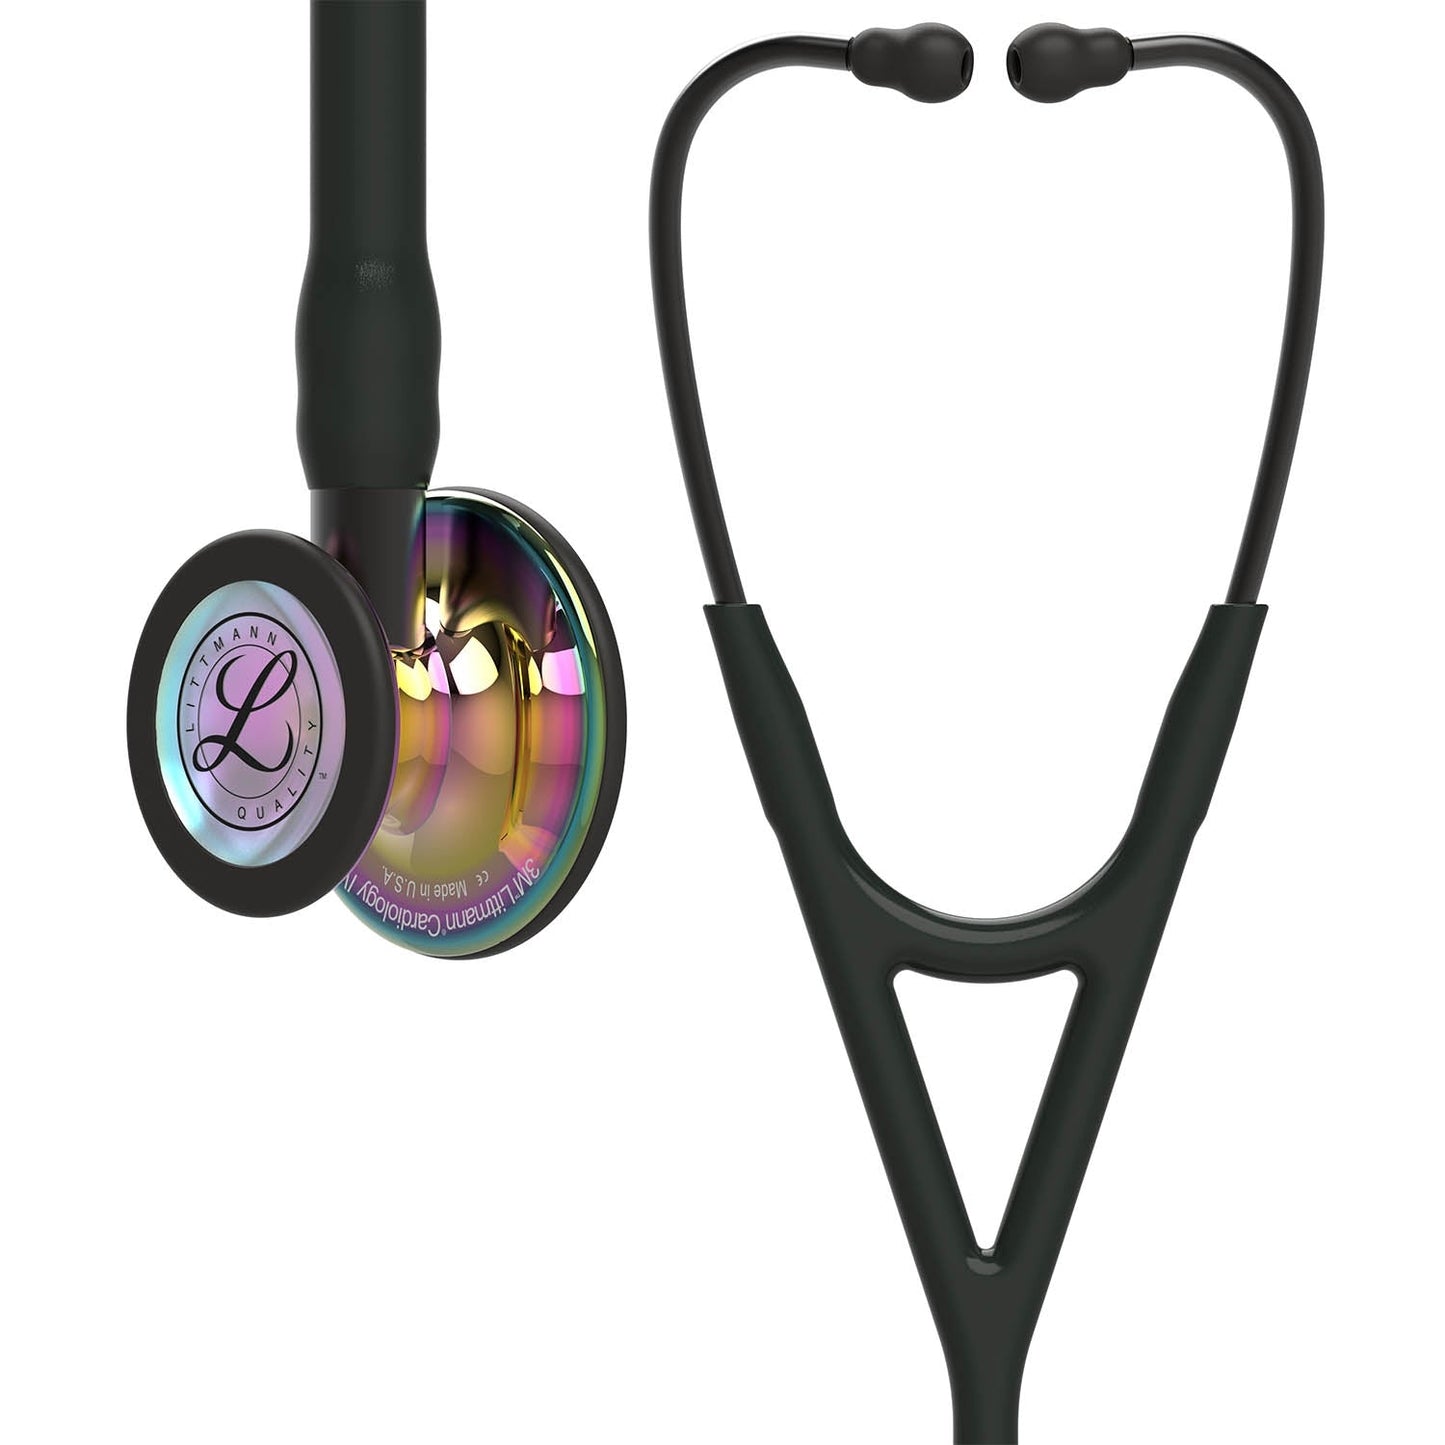 3M™ Littmann® Cardiology IV™ -stetoskooppi, diagnostinen, kiiltävä sateenkaarenvärinen rintakappale, musta letkusto, savunvärinen suppilo ja savunväriset kuuntelukaaret, 27 tuumaa, 6240